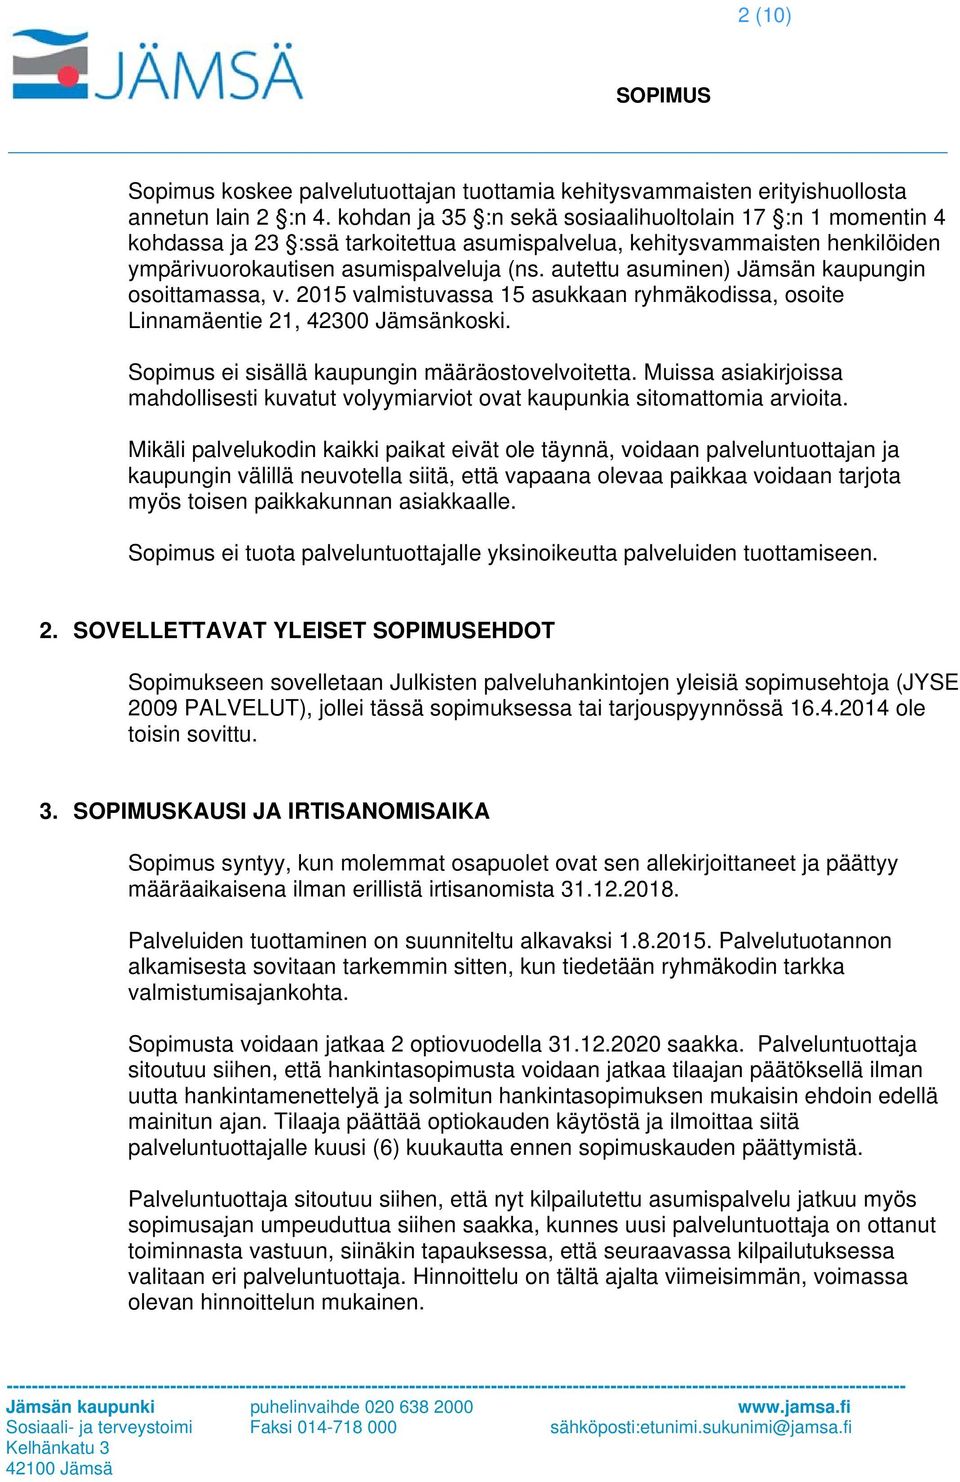 autettu asuminen) Jämsän kaupungin osoittamassa, v. 2015 valmistuvassa 15 asukkaan ryhmäkodissa, osoite Linnamäentie 21, 42300 Jämsänkoski. Sopimus ei sisällä kaupungin määräostovelvoitetta.